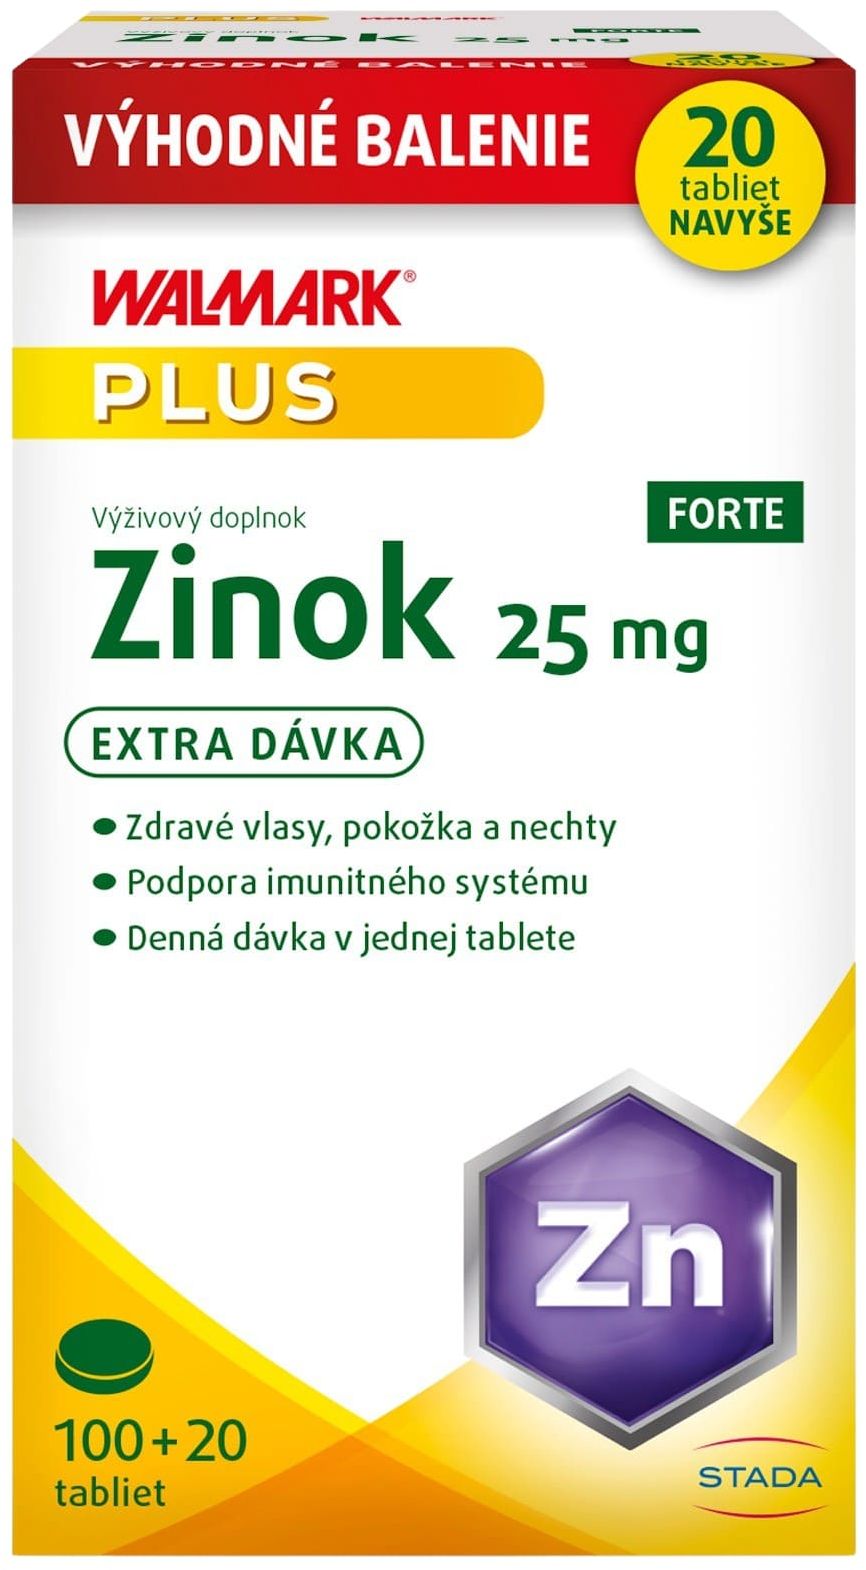 Walmark Zinek Forte 25 mg Promo 120 tabliet